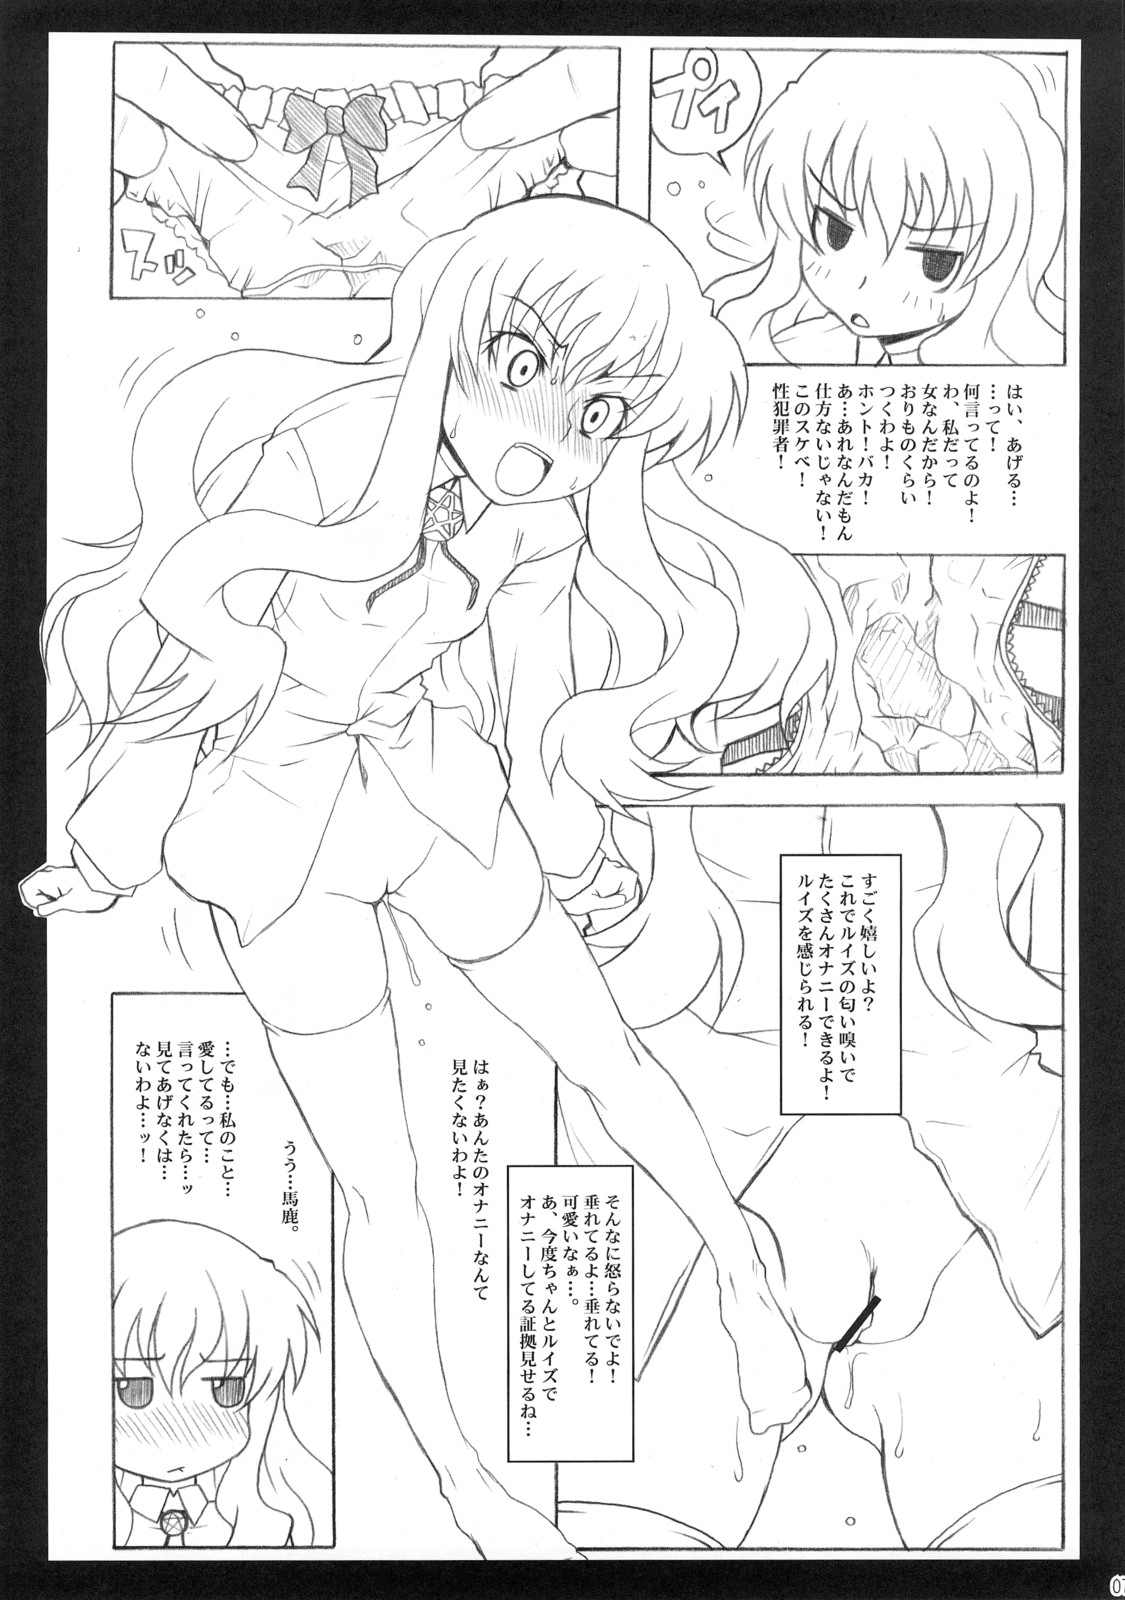 [Shirandou] Louise no Shoudou (Zero no Tsukaima / The Familiar of Zero) page 6 full